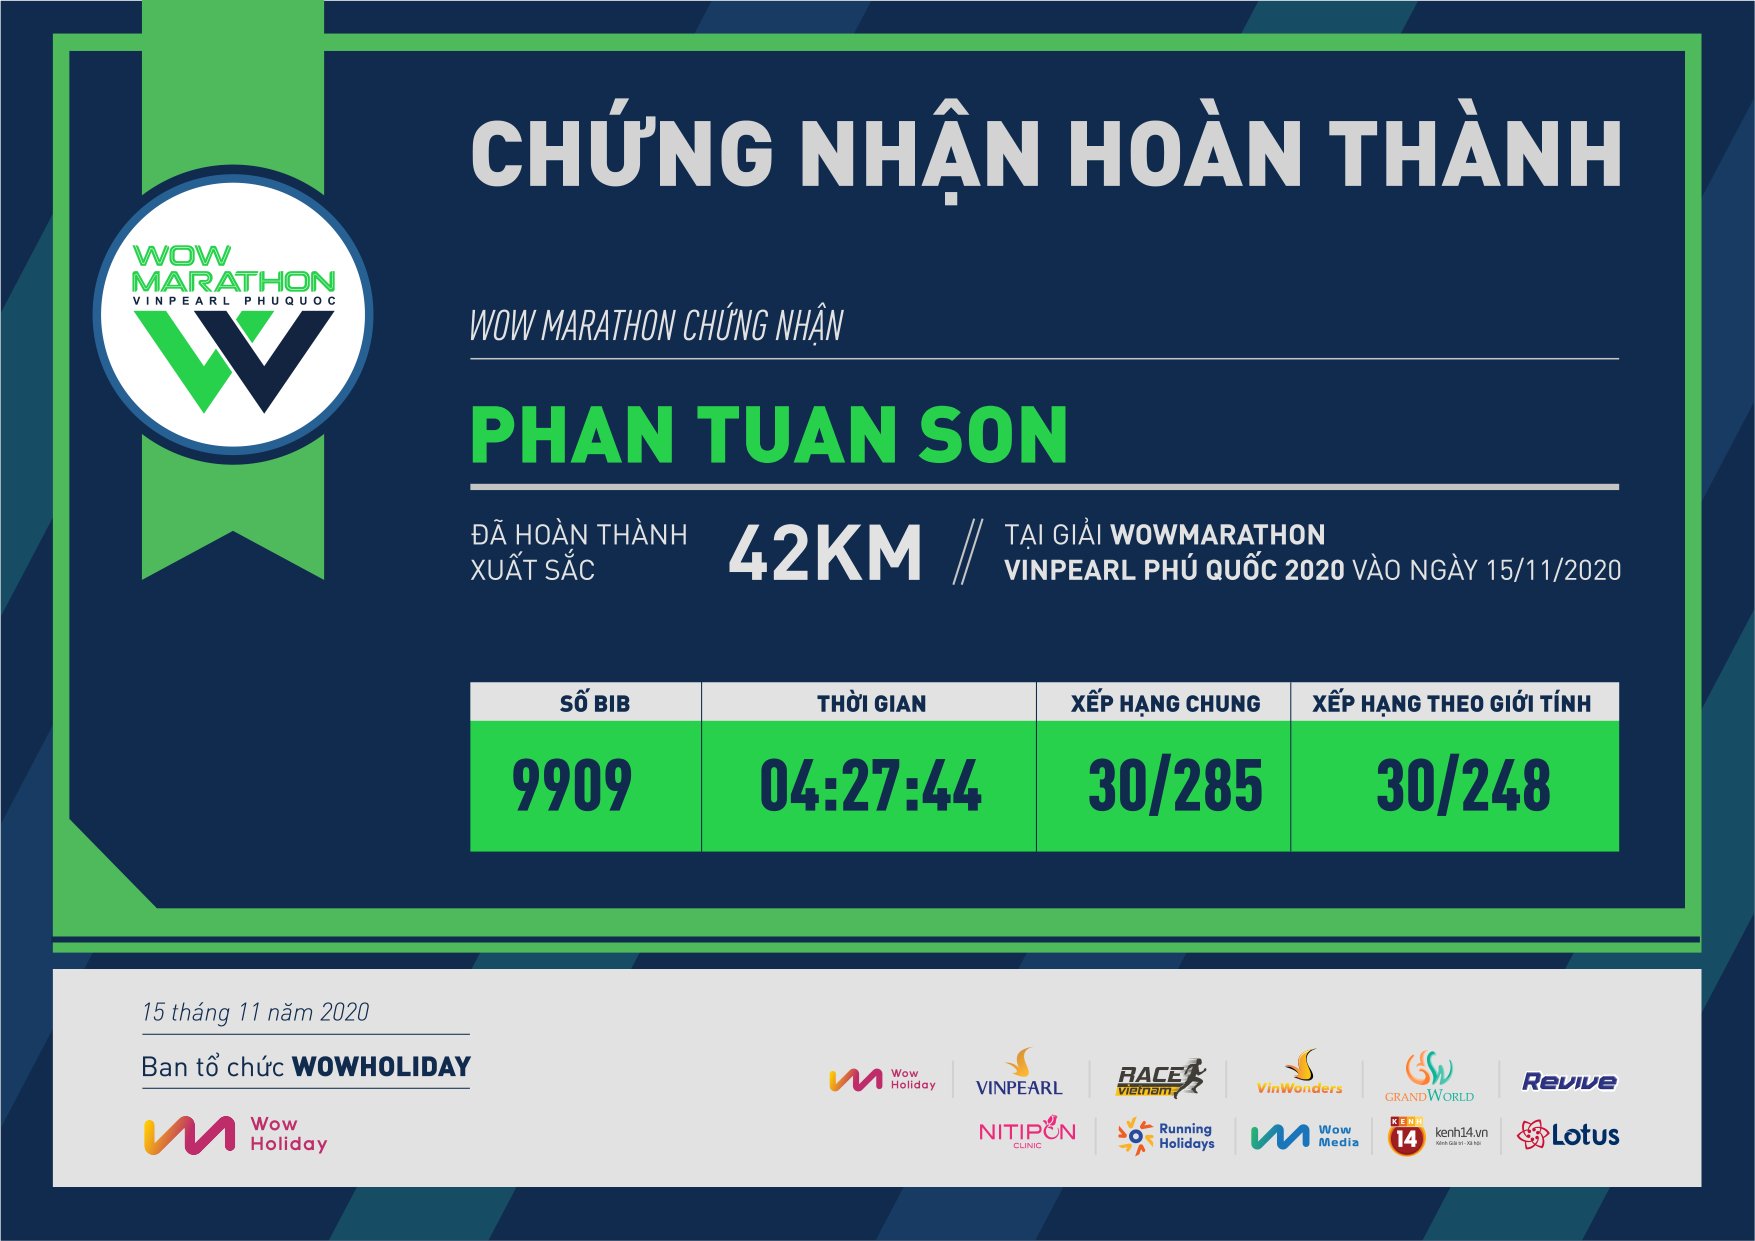 9909 - Phan Tuan Son